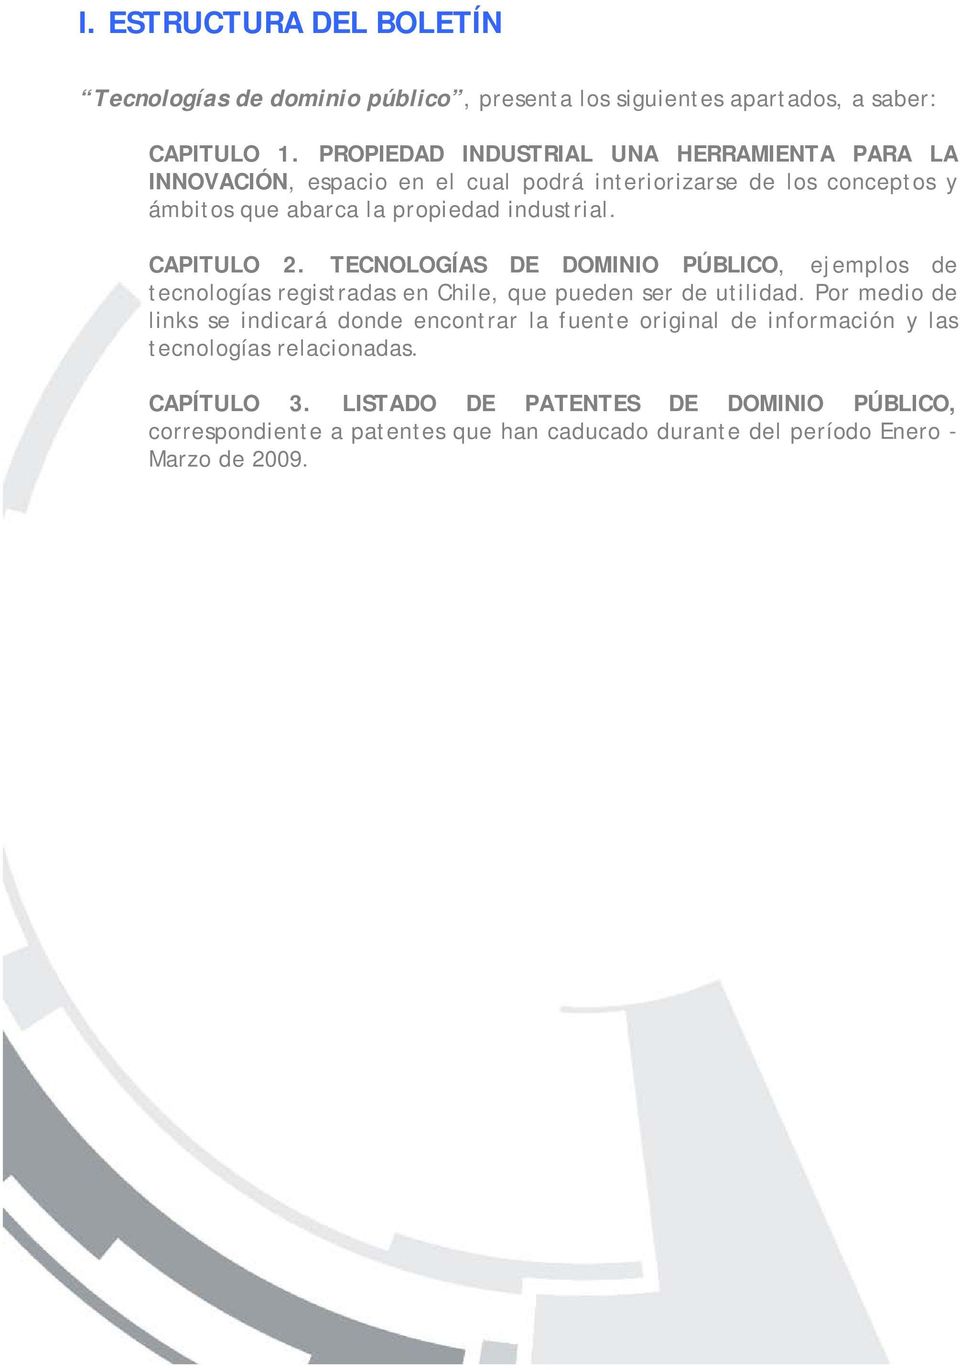 CAPITULO 2. TECNOLOGÍAS DE DOMINIO PÚBLICO, ejemplos de tecnologías registradas en Chile, que pueden ser de utilidad.